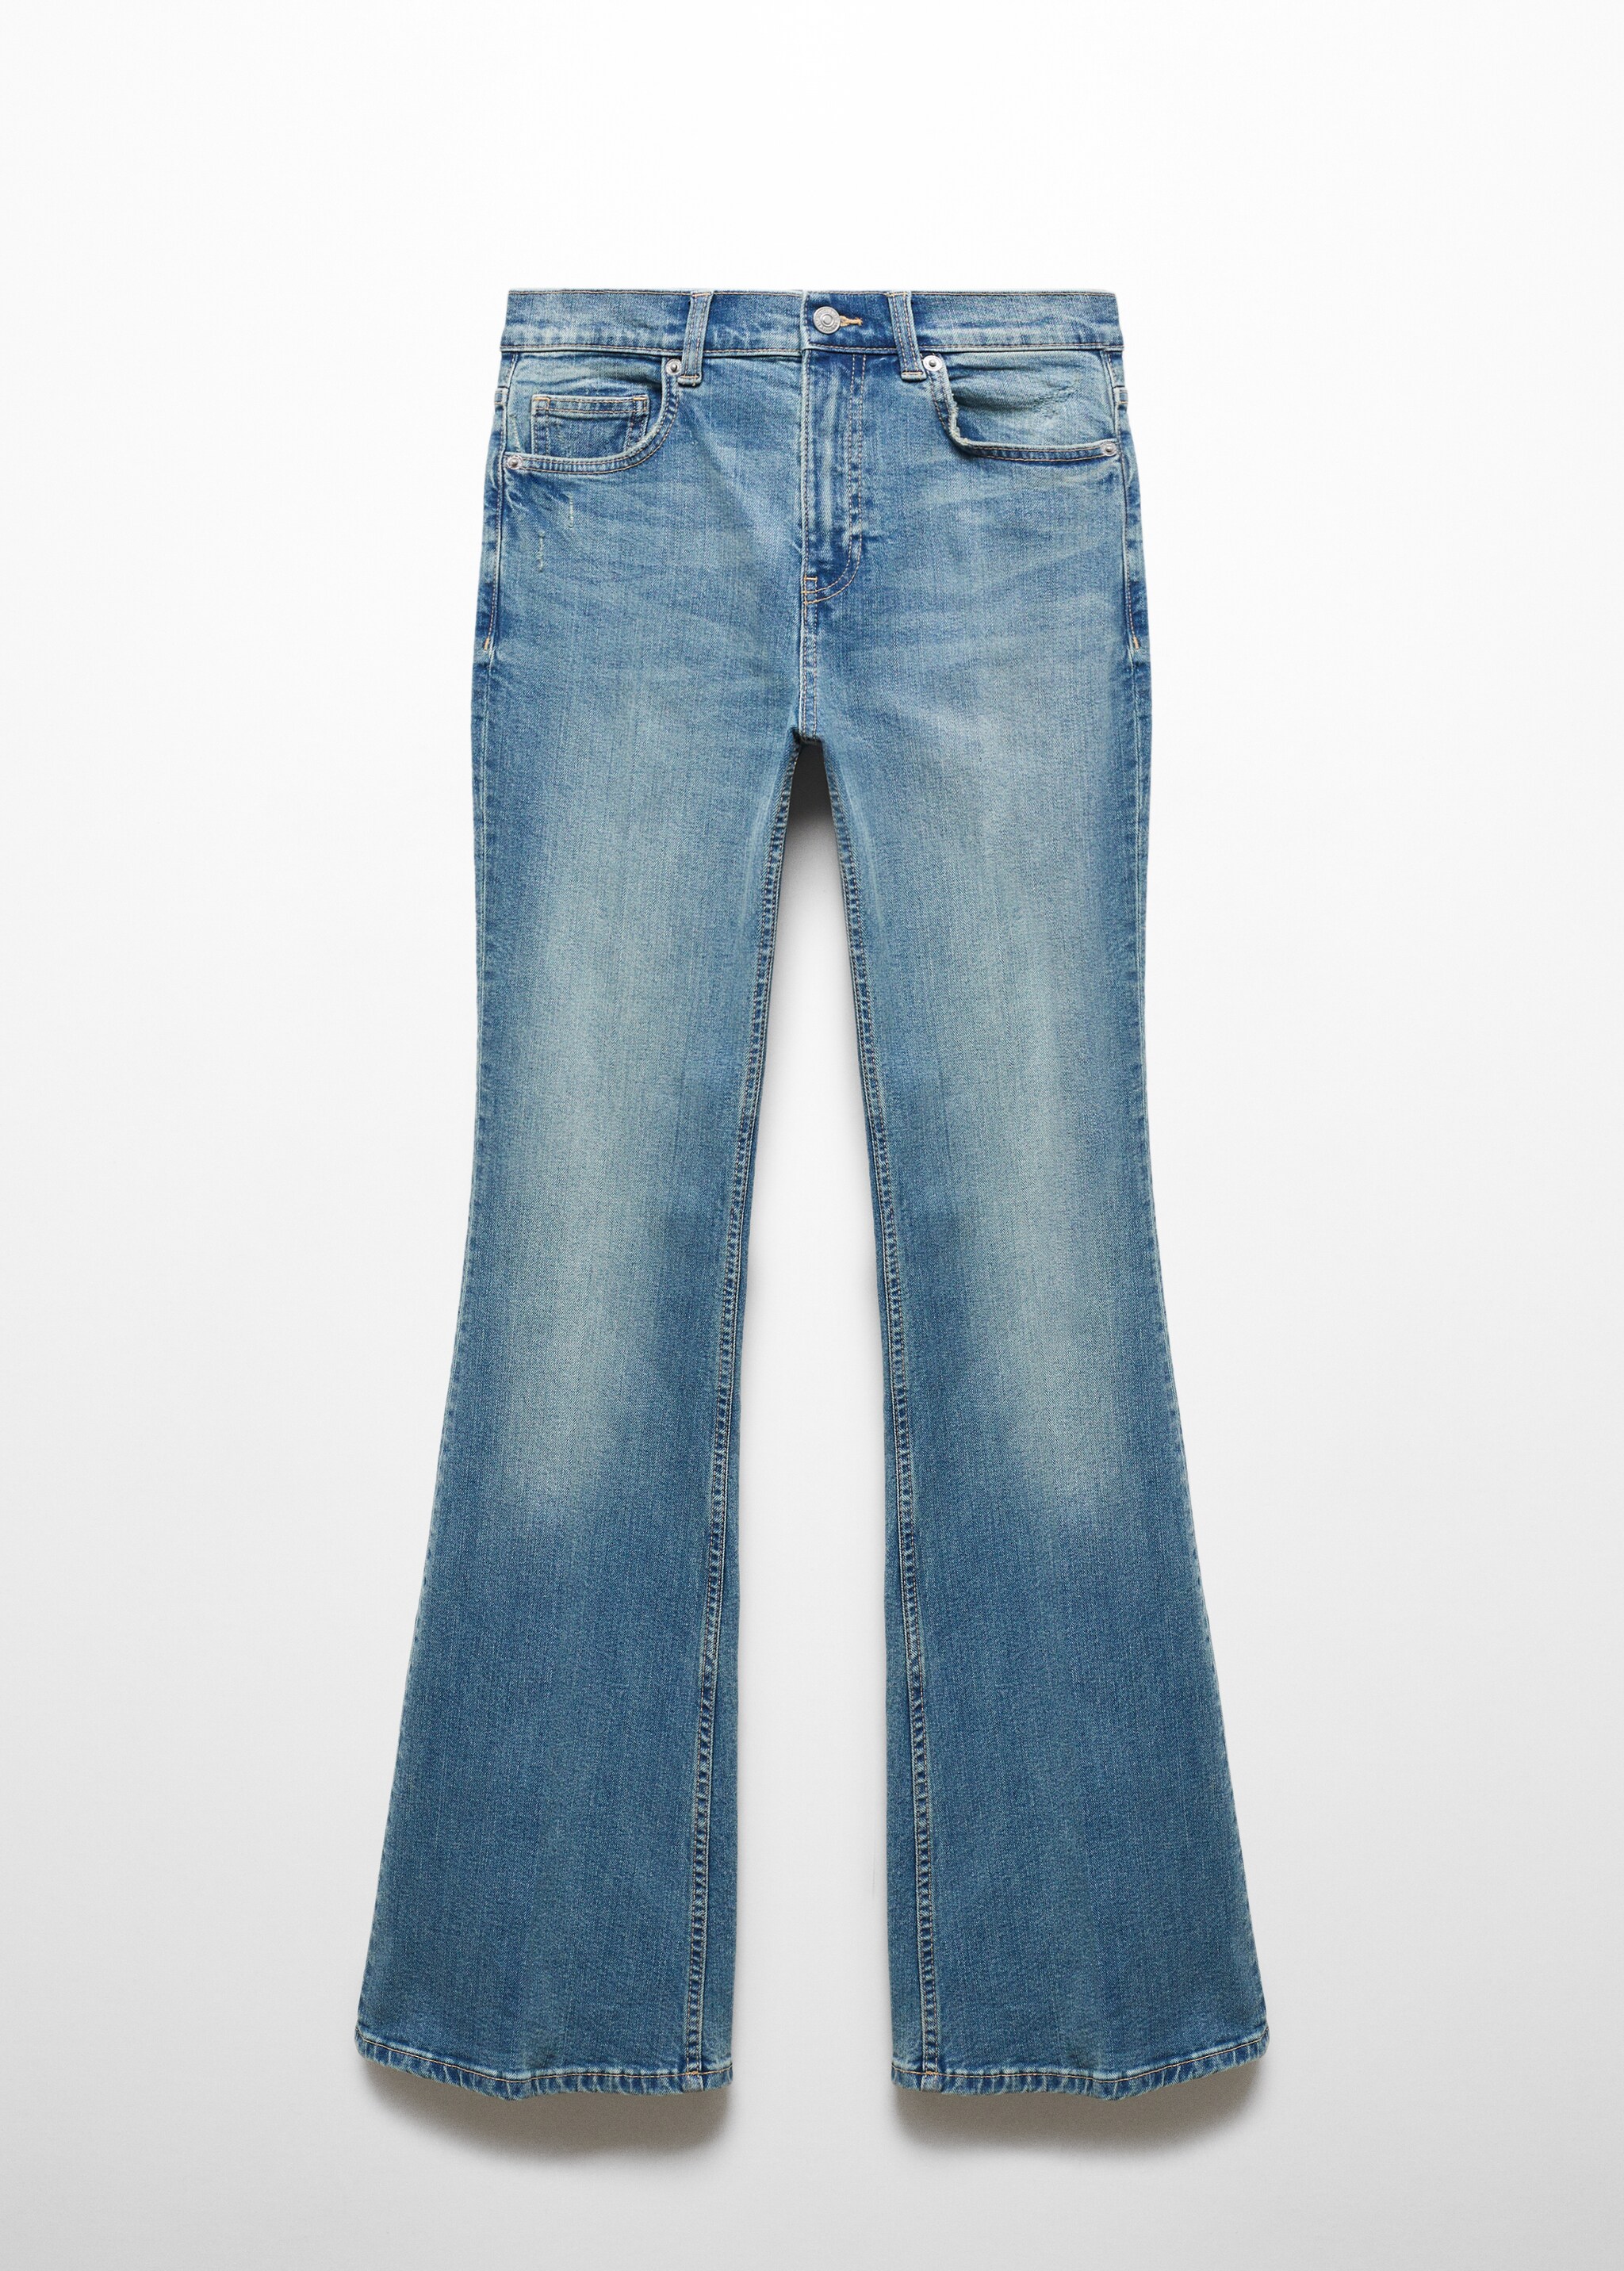 İspanyol paça yüksek bel jean pantolon - Modelsiz ürün